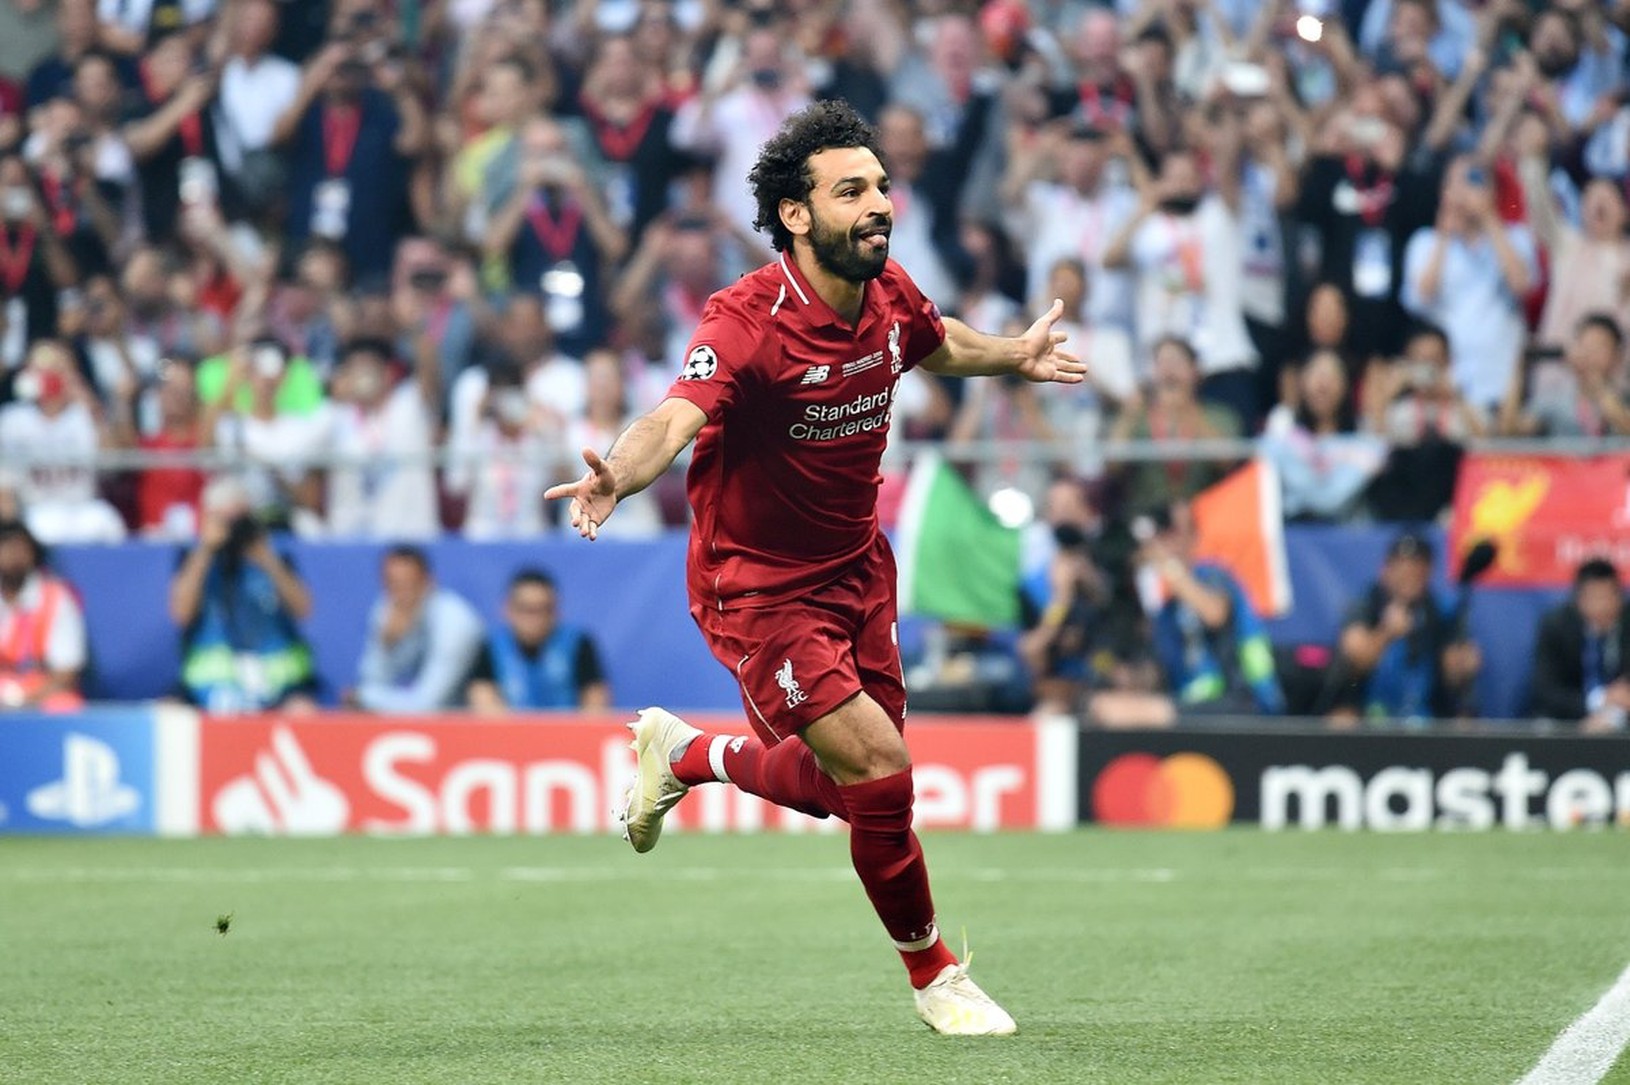 Mohamed Salah - 1:0